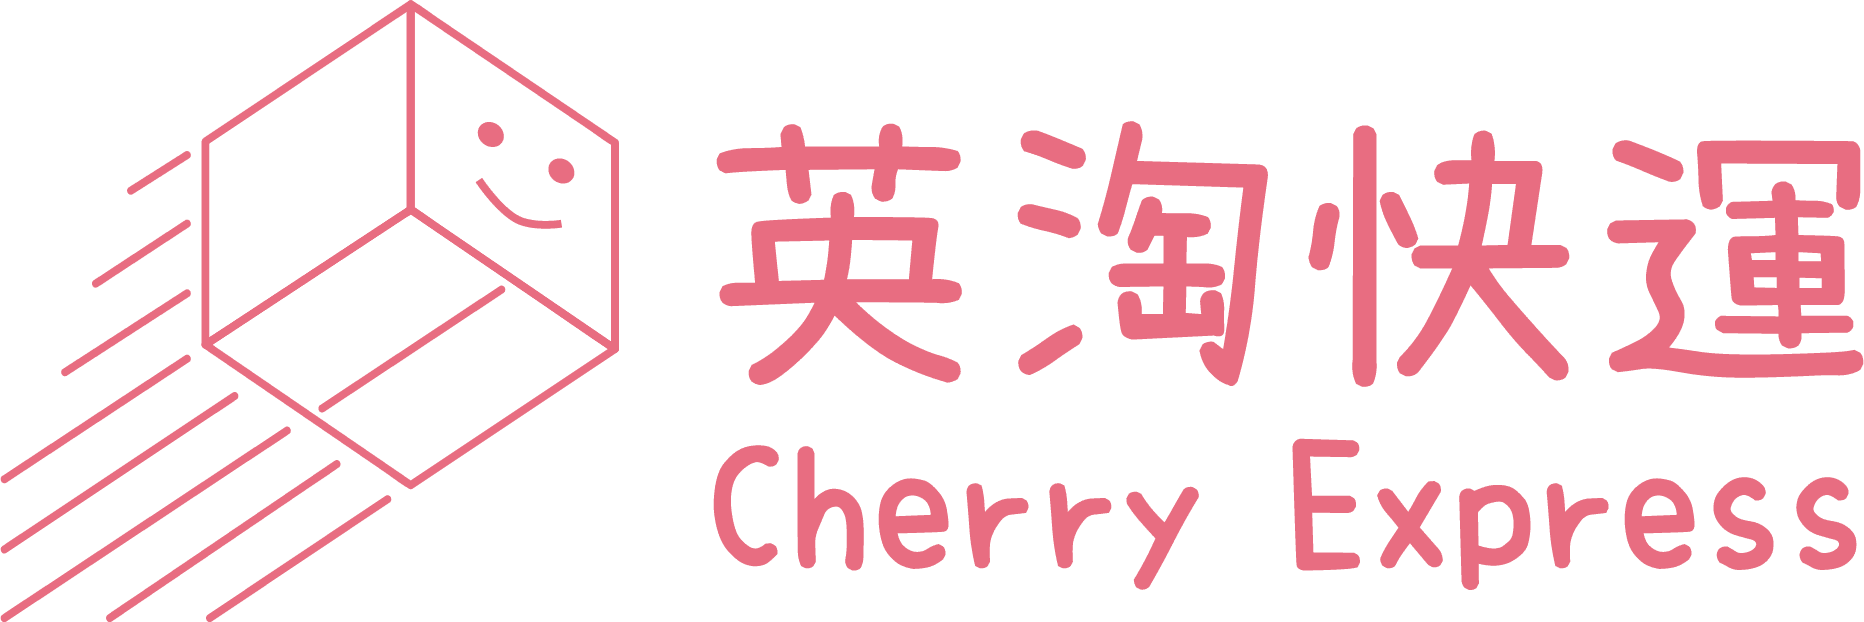 Cherry express